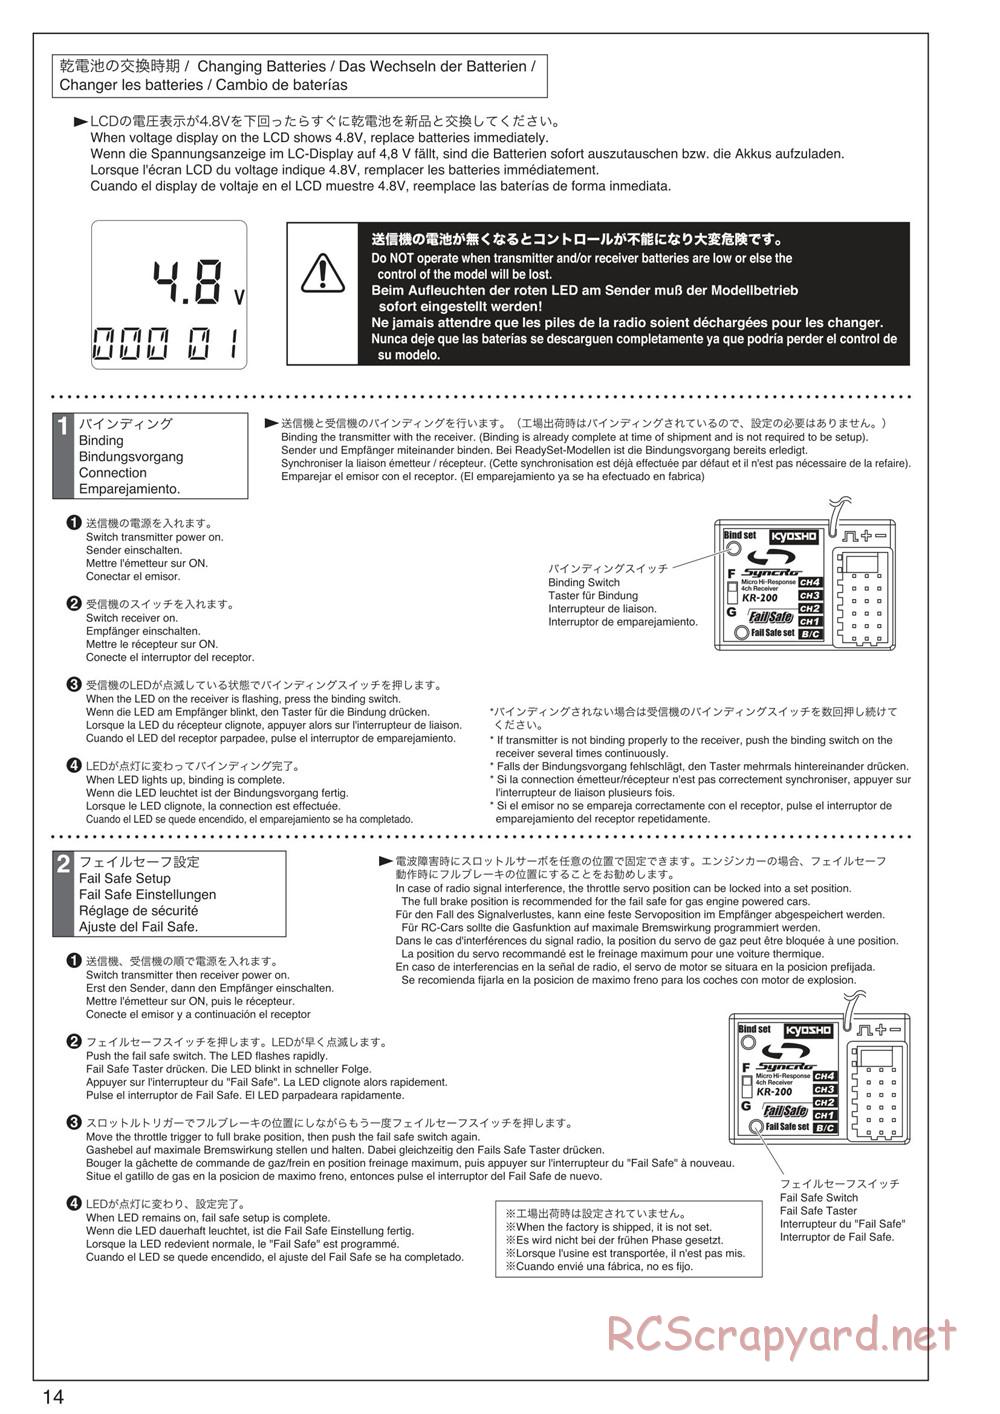 Kyosho - Scorpion XXL VE - Manual - Page 14